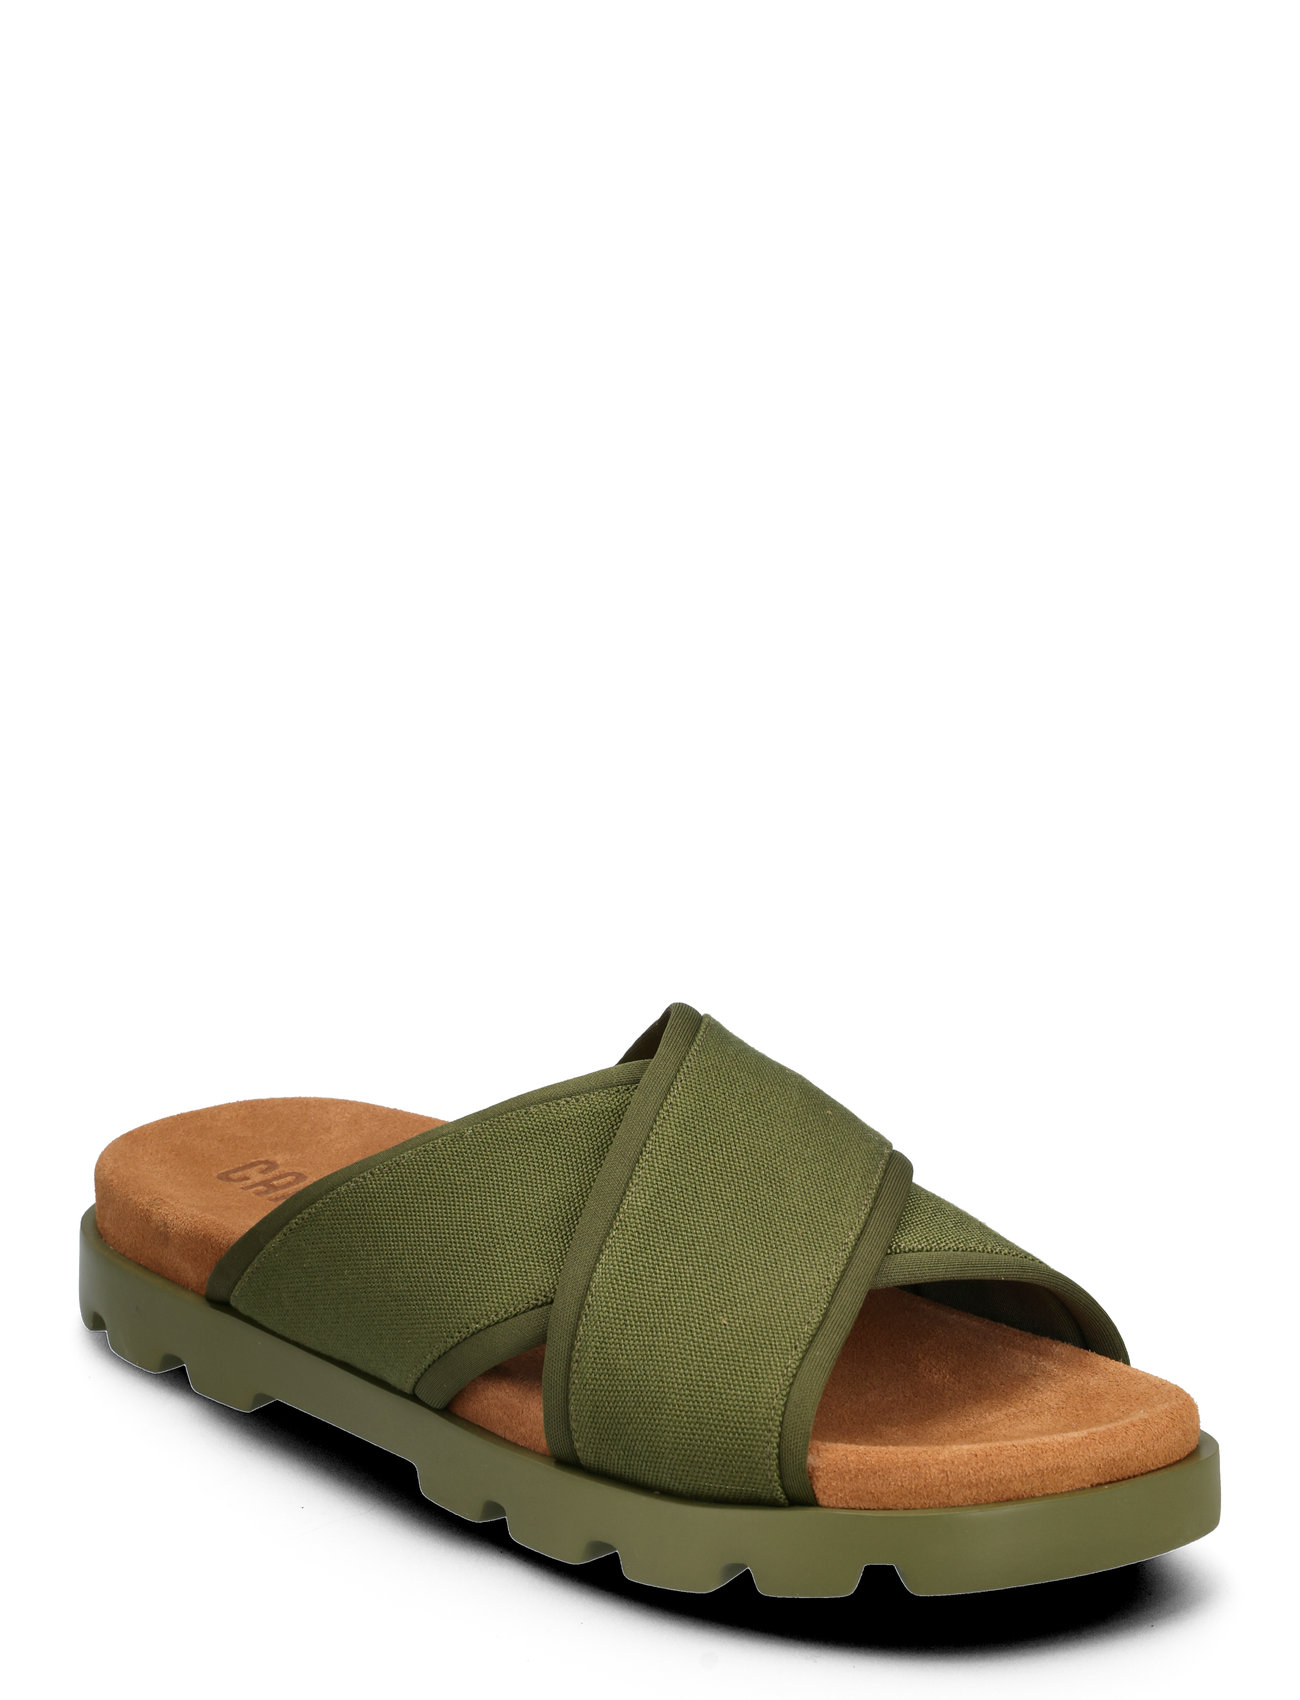 Brutus Sandal Shoes Summer Shoes Sandals Green Camper